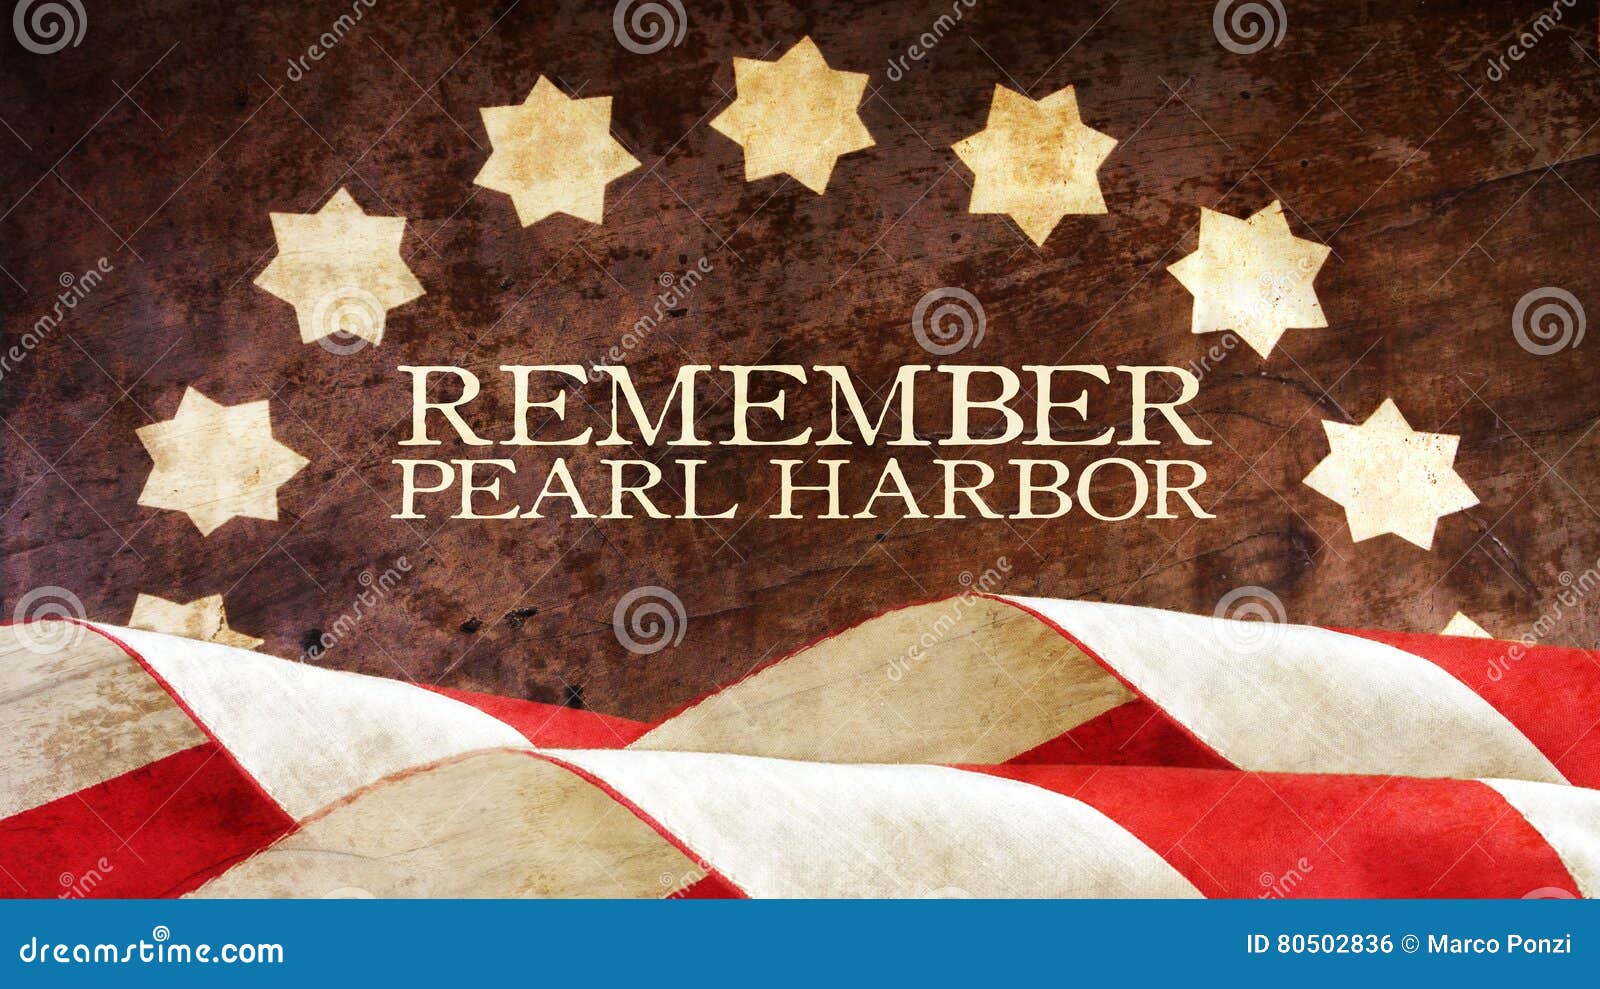 remember pearl harbor. wood